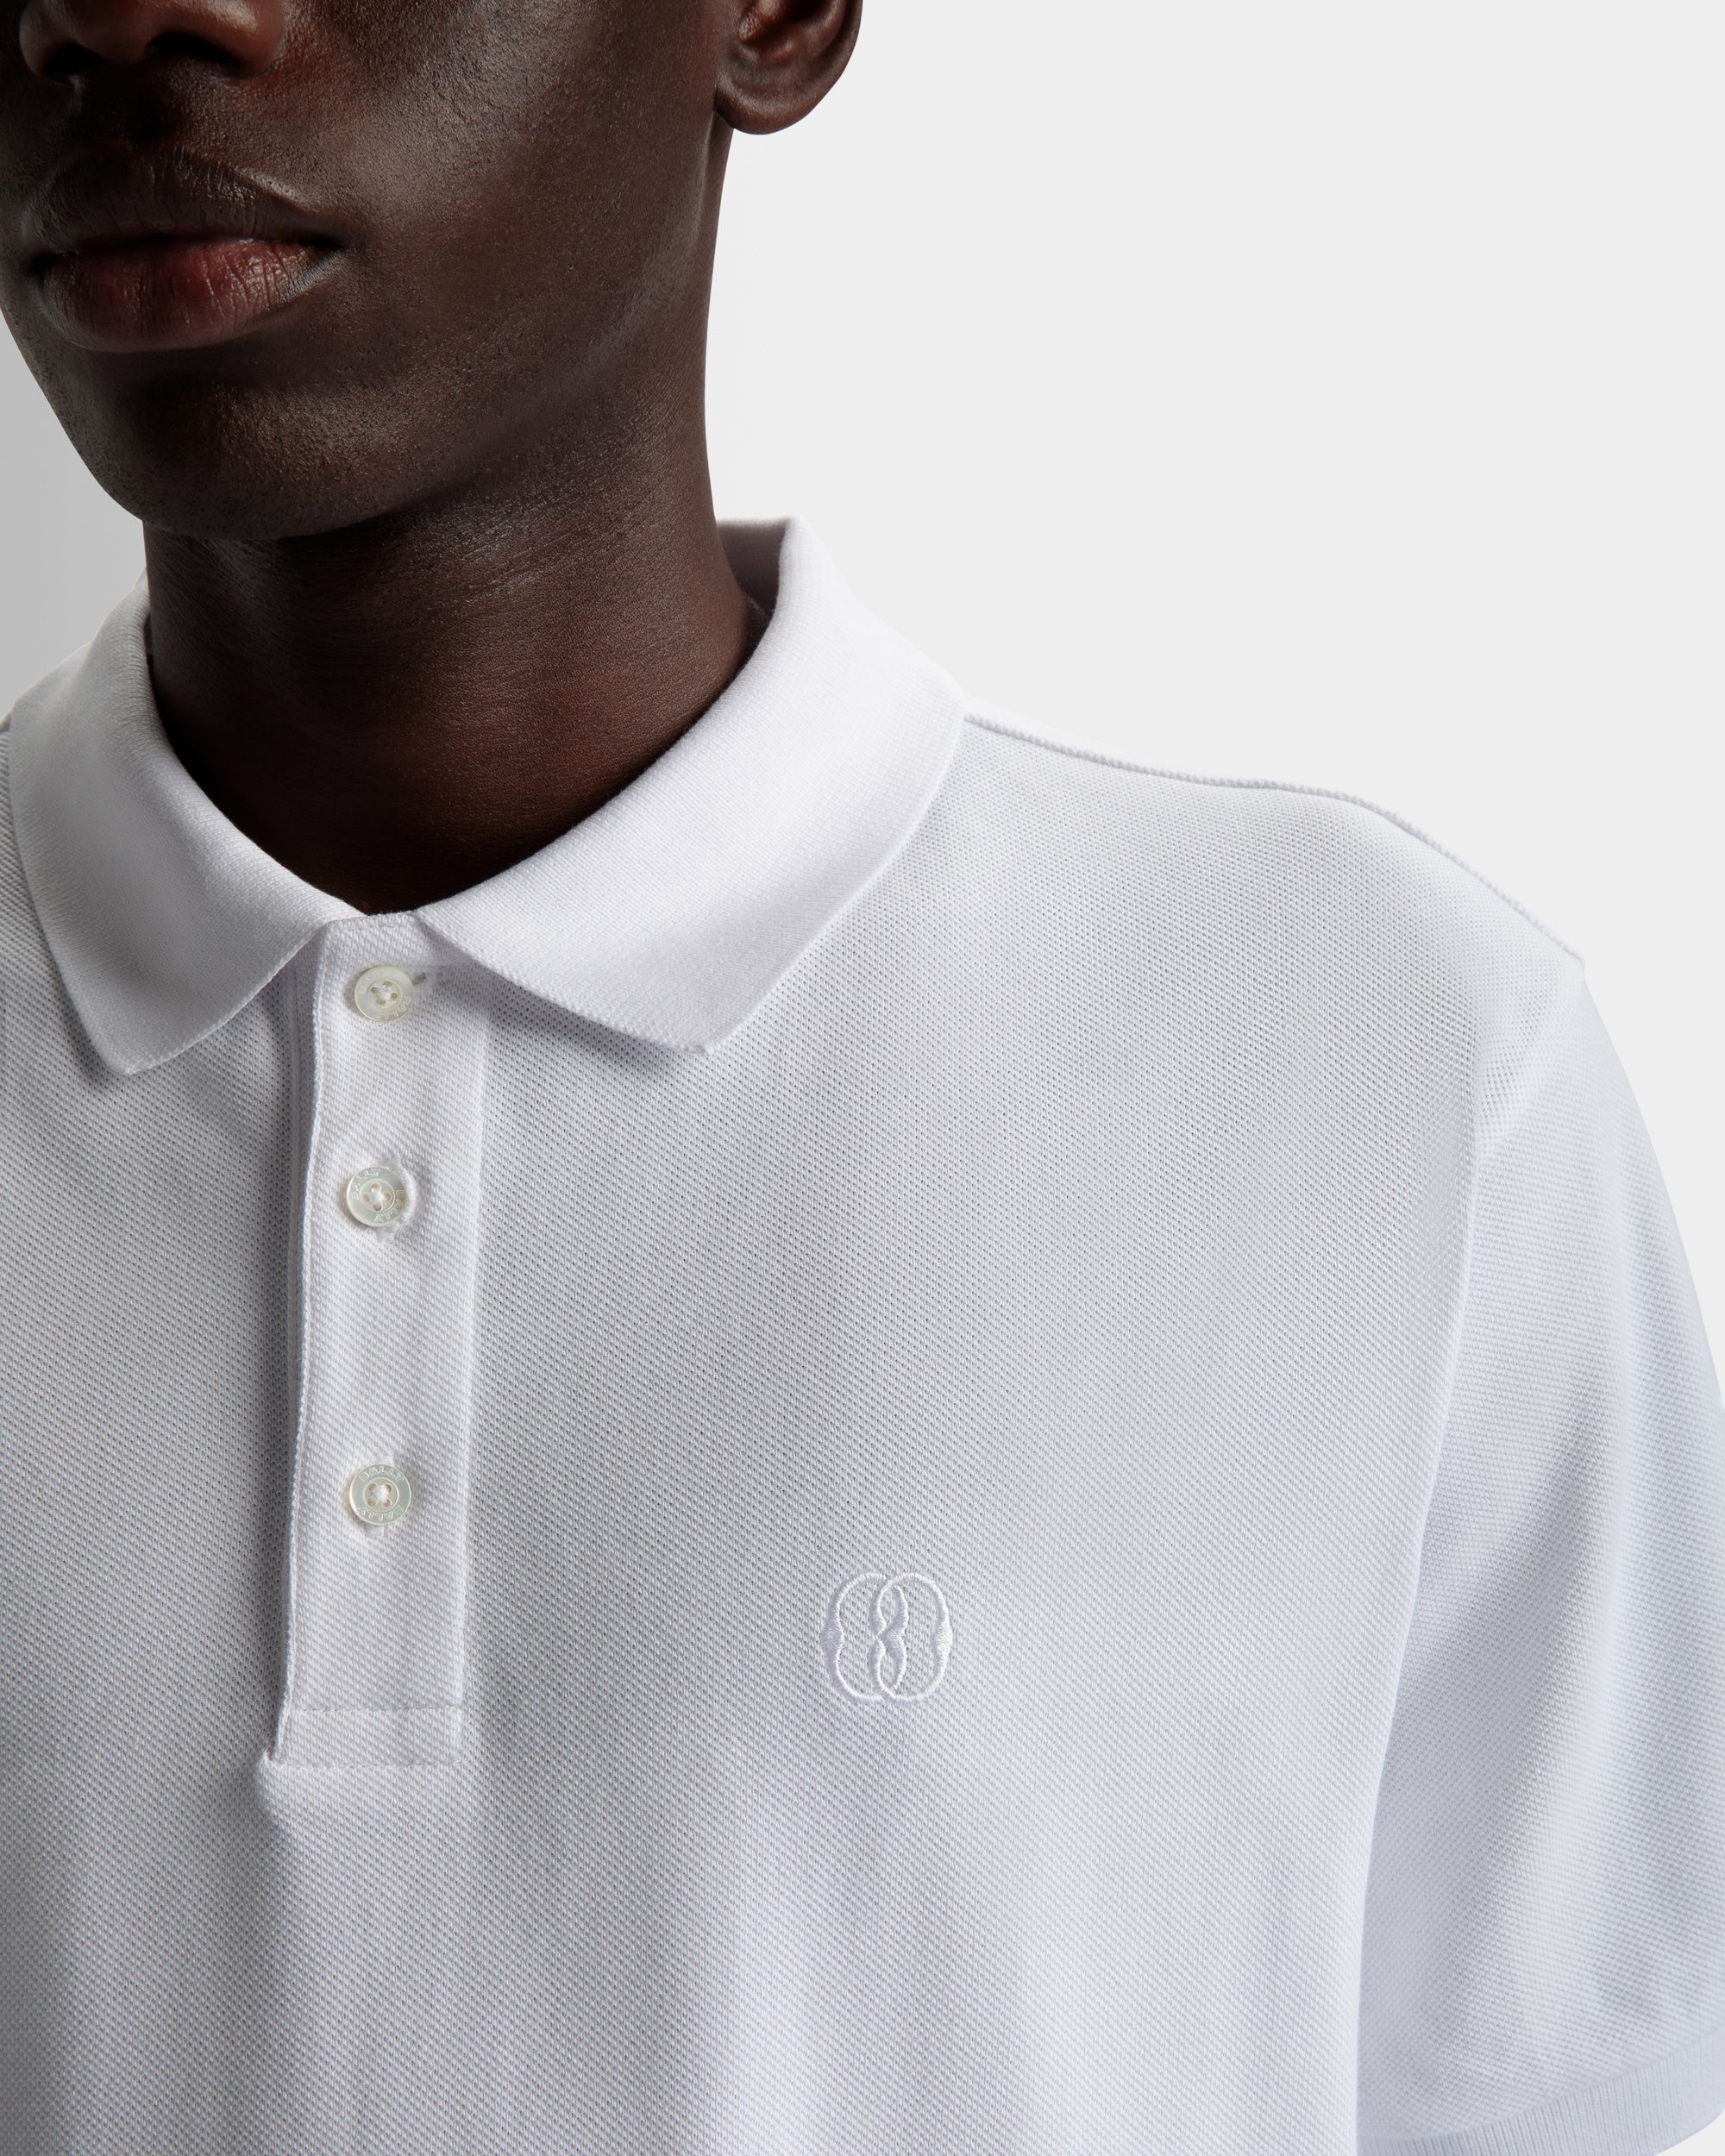 Kurzarm-Poloshirt | Poloshirt für Herren | Weiße Baumwolle | Bally | Model getragen Detail